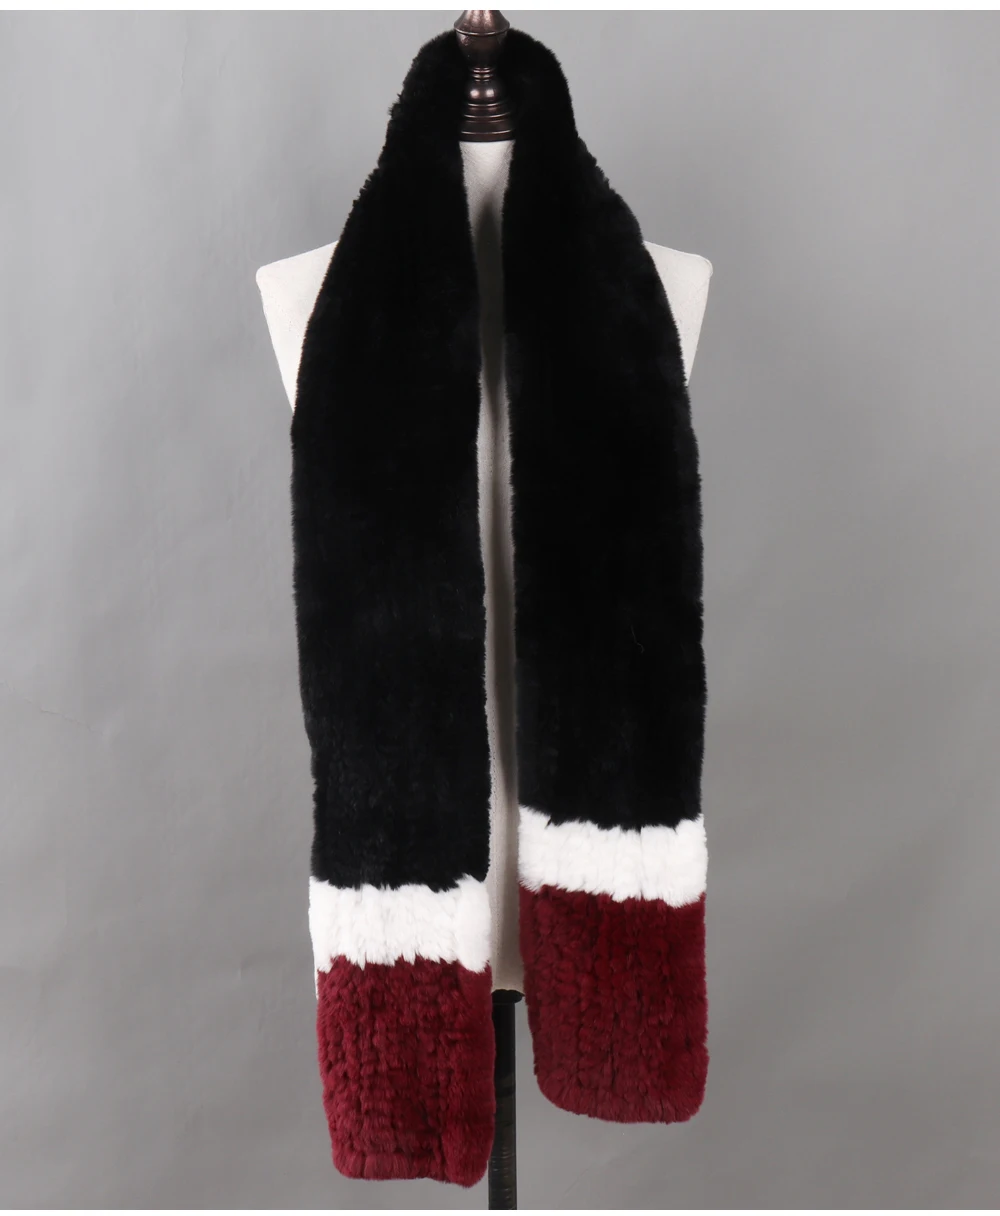 Роскошный Настоящий мех кролика, шарфы, длинный стиль, для женщин, натуральный мех, для русской леди, зимний теплый вязаный шарф из натурального меха